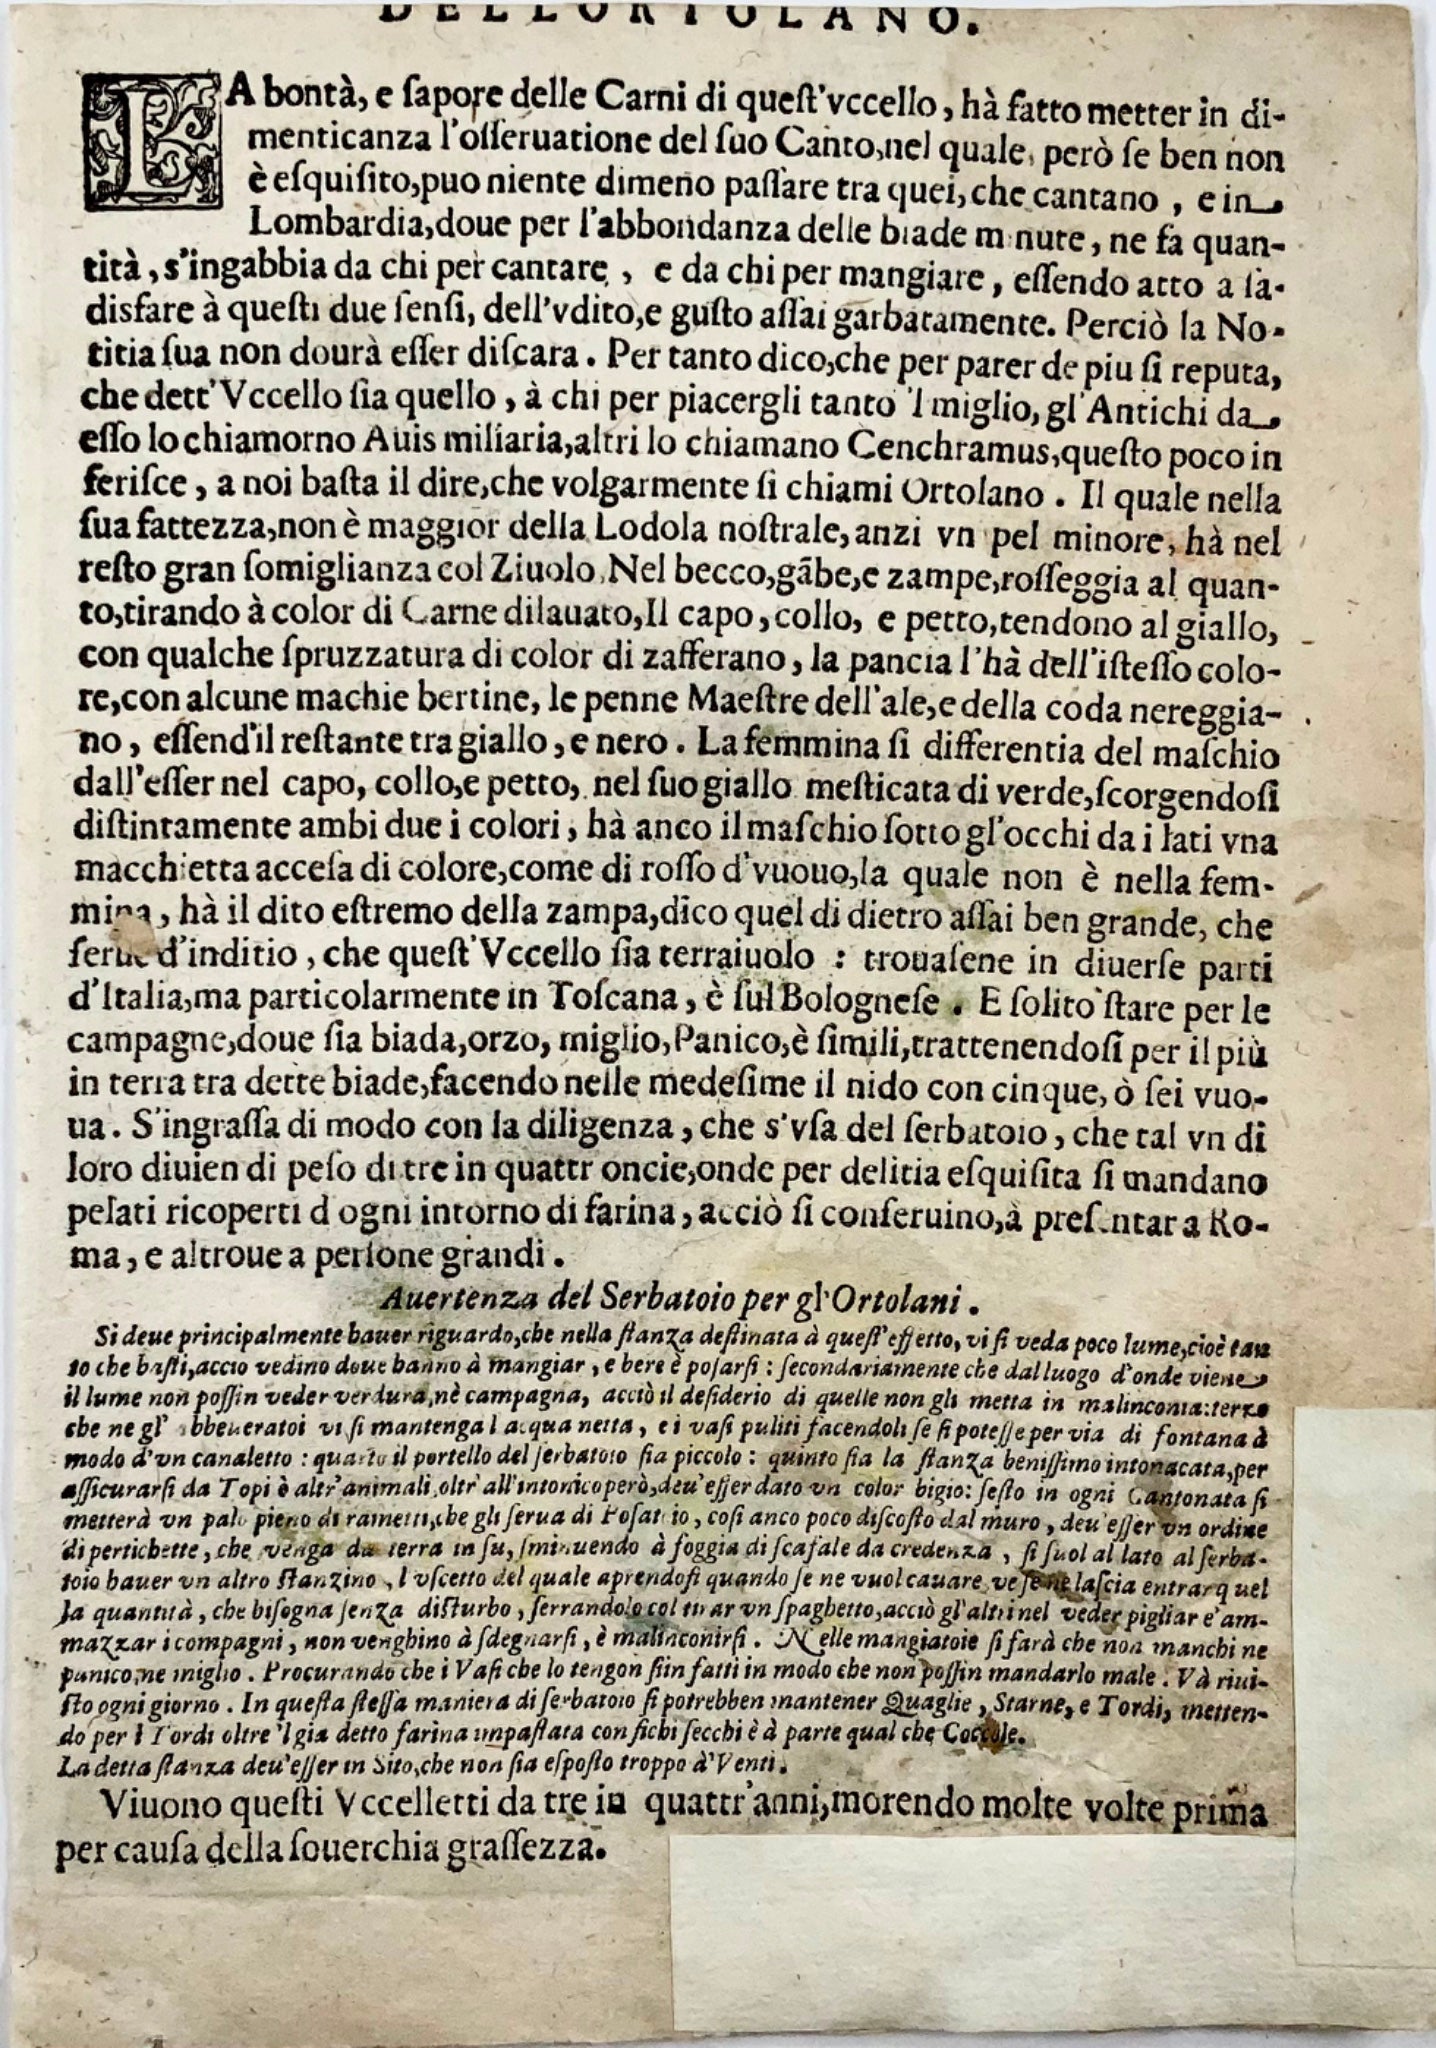 1622 Antonio Tempesta; Le P. Villamena PERROQUET Oiseau - Gravure Maître